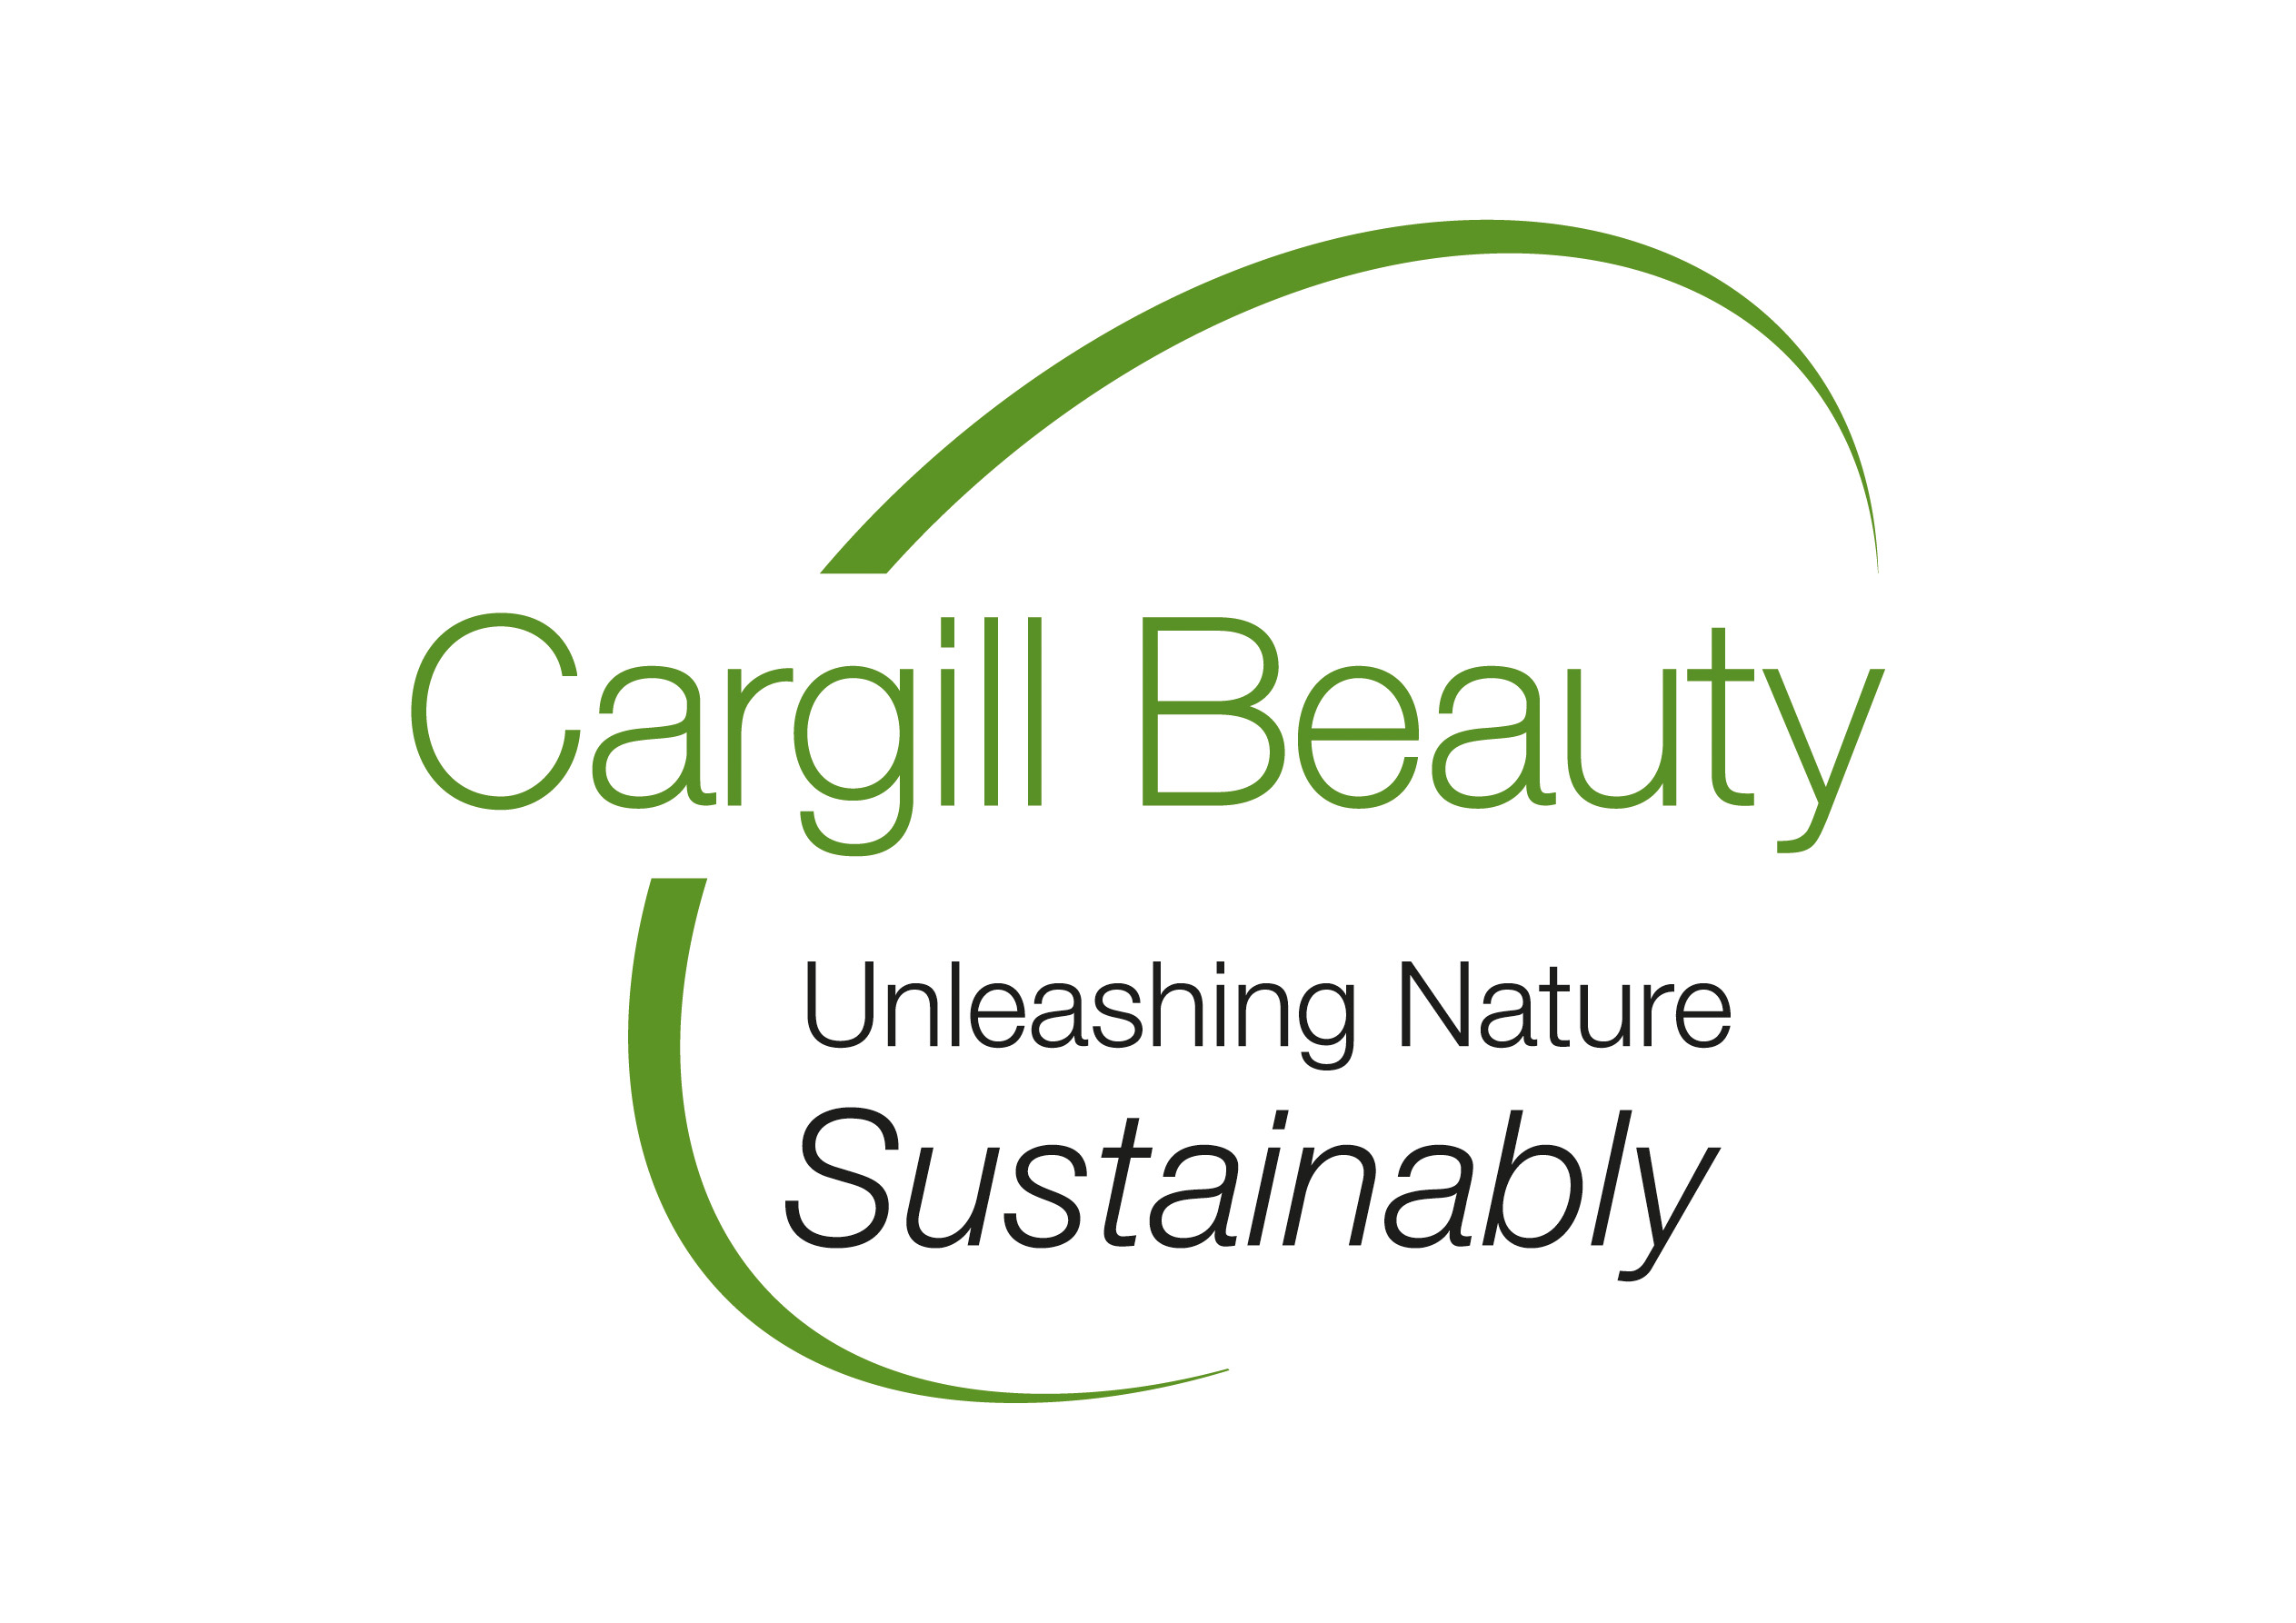 cargill logo 